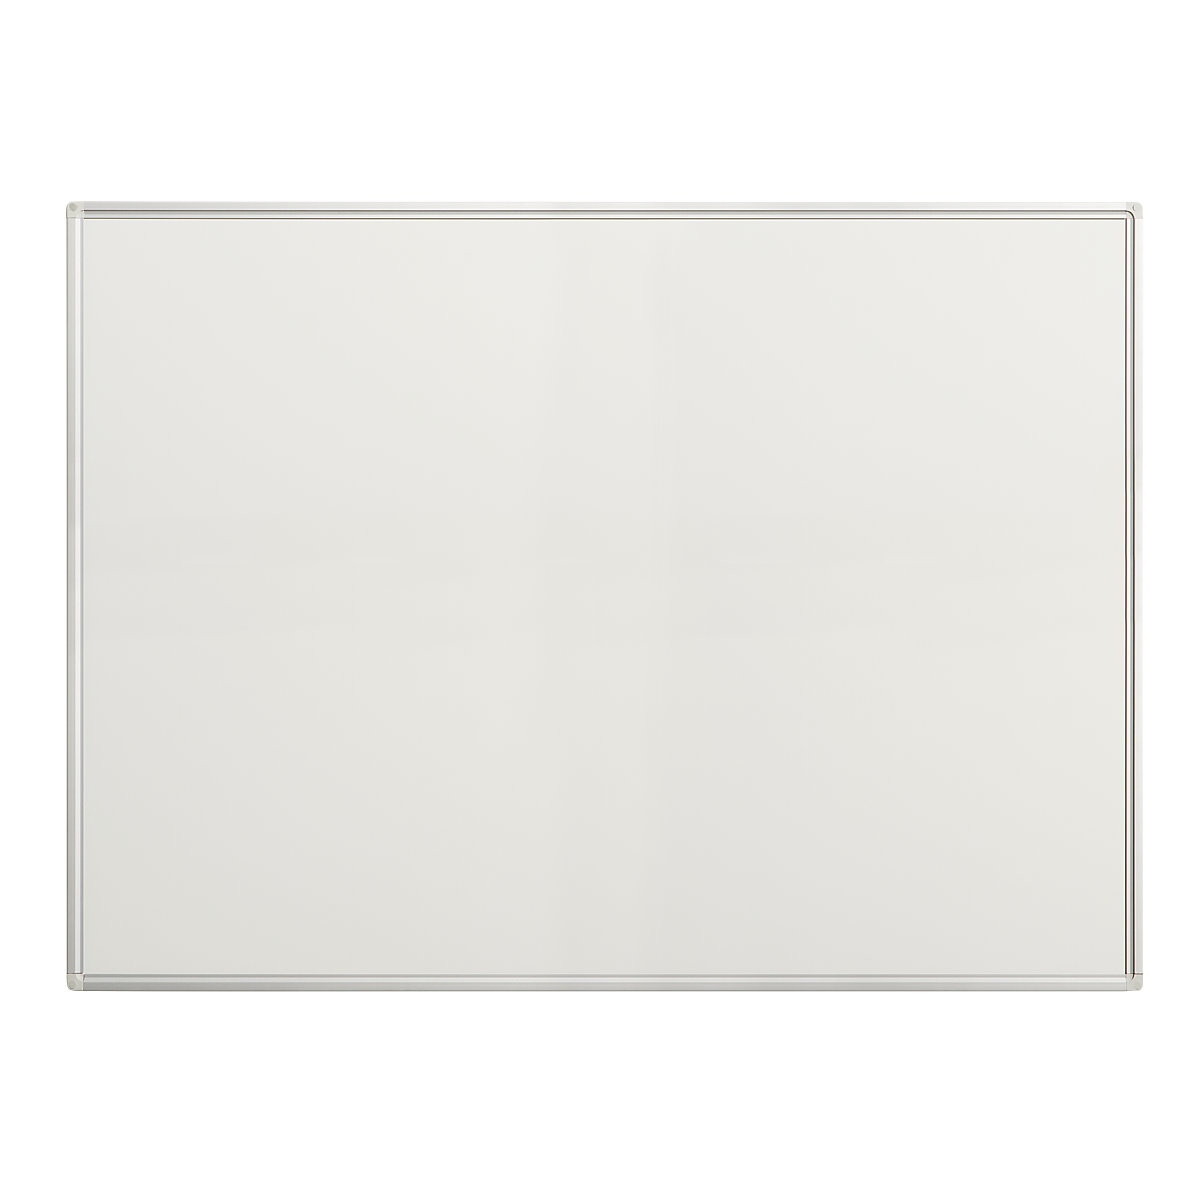 EUROKRAFTpro – Biała tablica Economy, blacha stalowa, lakierowana, szer. x wys. 1200 x 900 mm